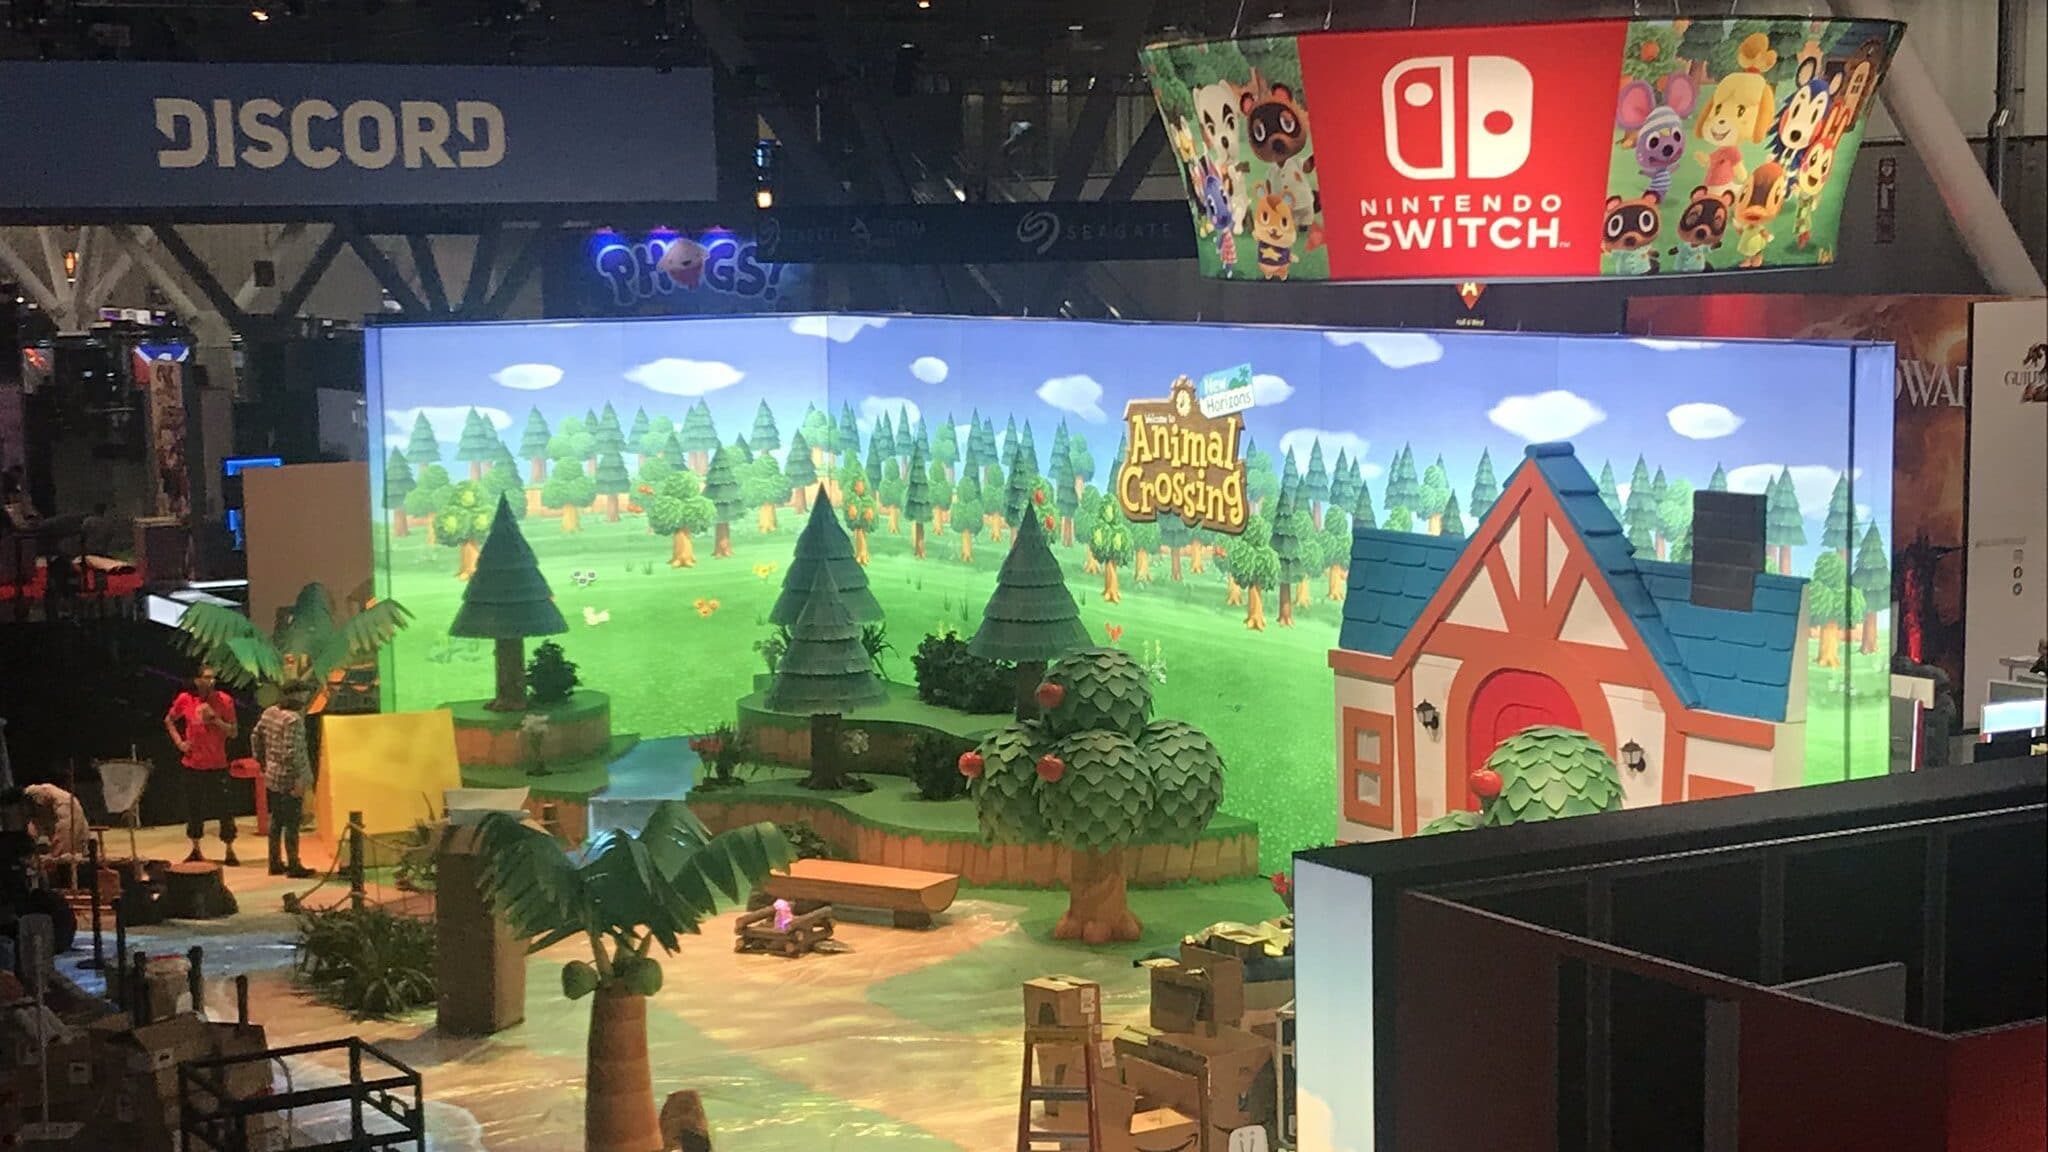 Primer vistazo en imágenes del espacio dedicado a Animal Crossing: New Horizons en la PAX East 2020